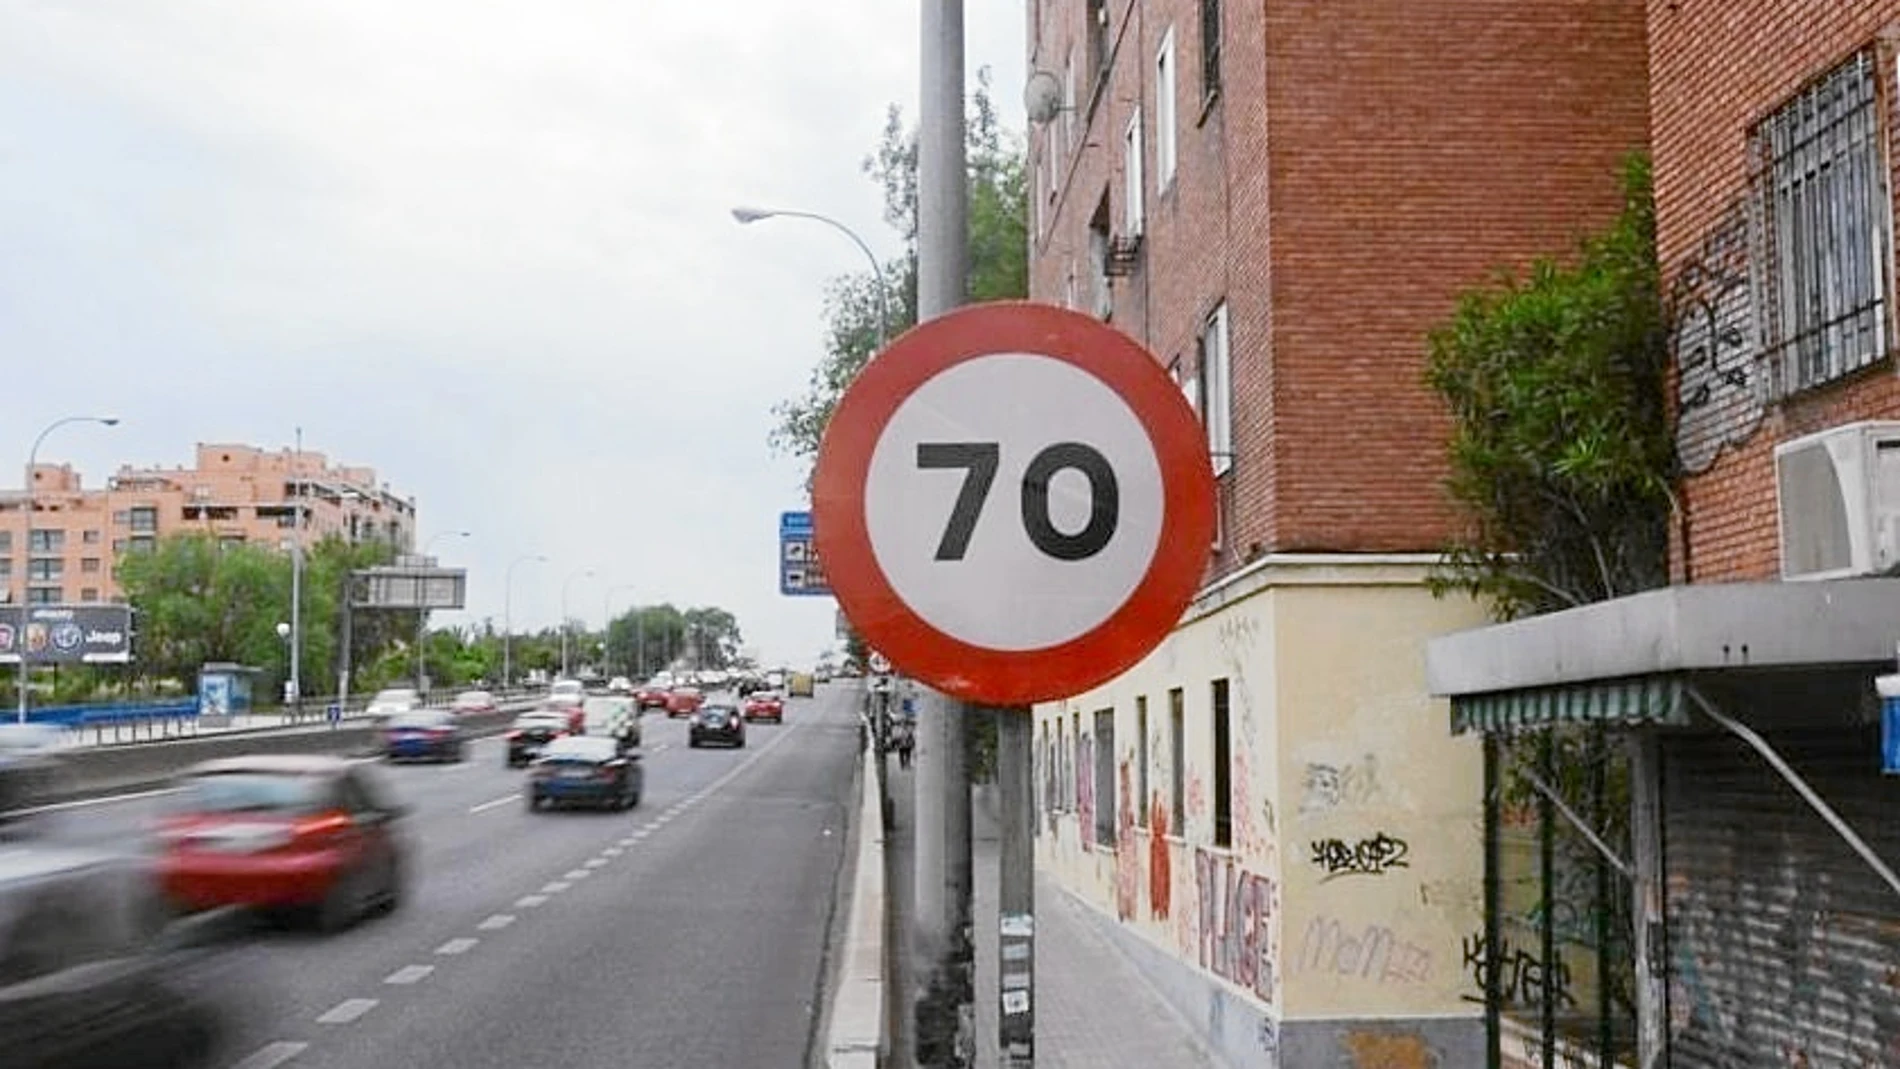 Actualmente el paseo de Extremadura está limitado a 70 kilómetros por hora. El radar de tramo limitará a 50 esta vía que conecta la capital con el suroeste